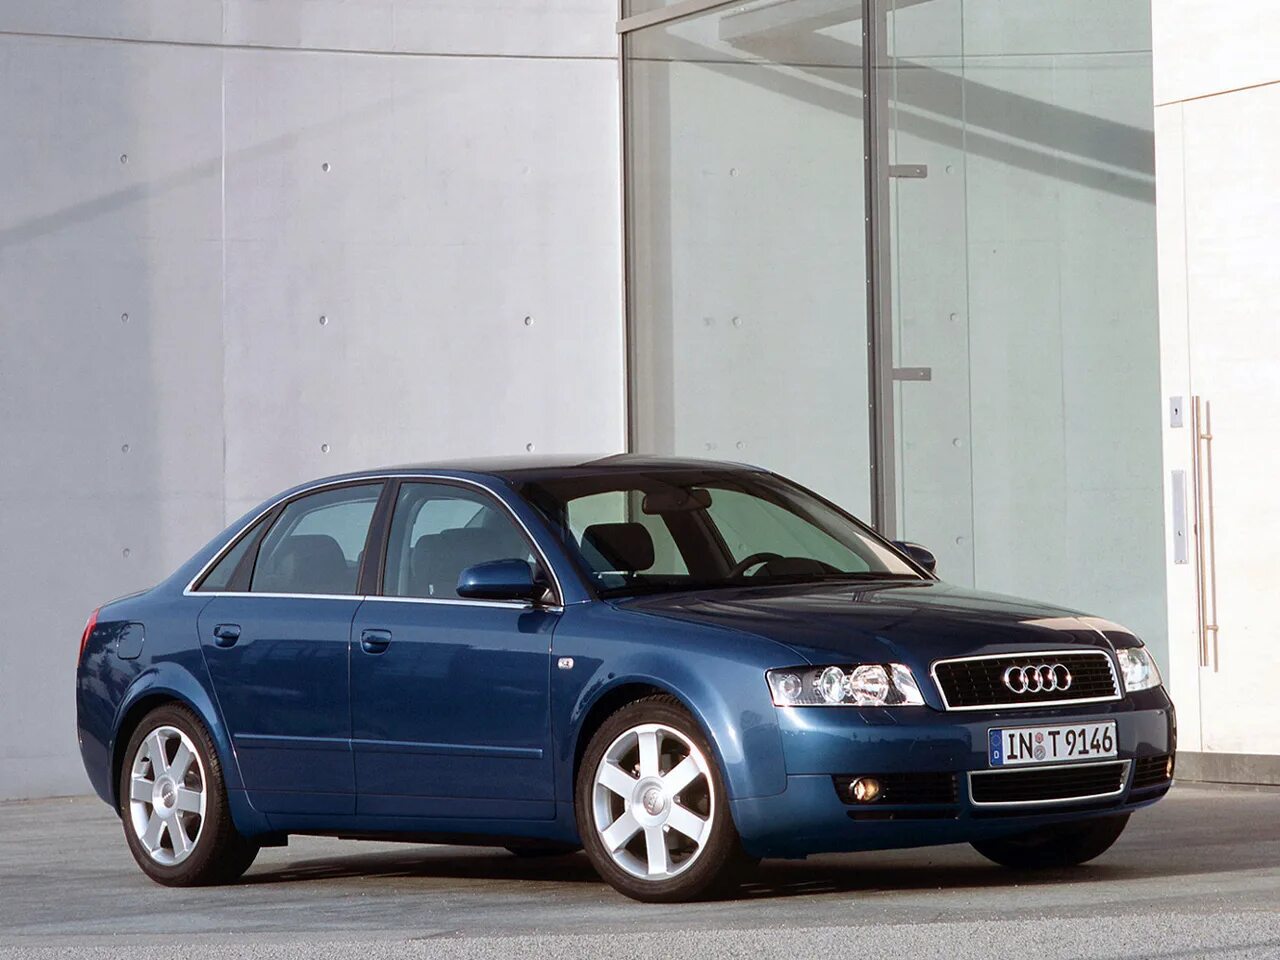 Ауди а4 б6 седан. Audi a4 b6 2000. Audi a4 b6 2002. Audi a4 b6 2003. Ауди а4 2002 седан.